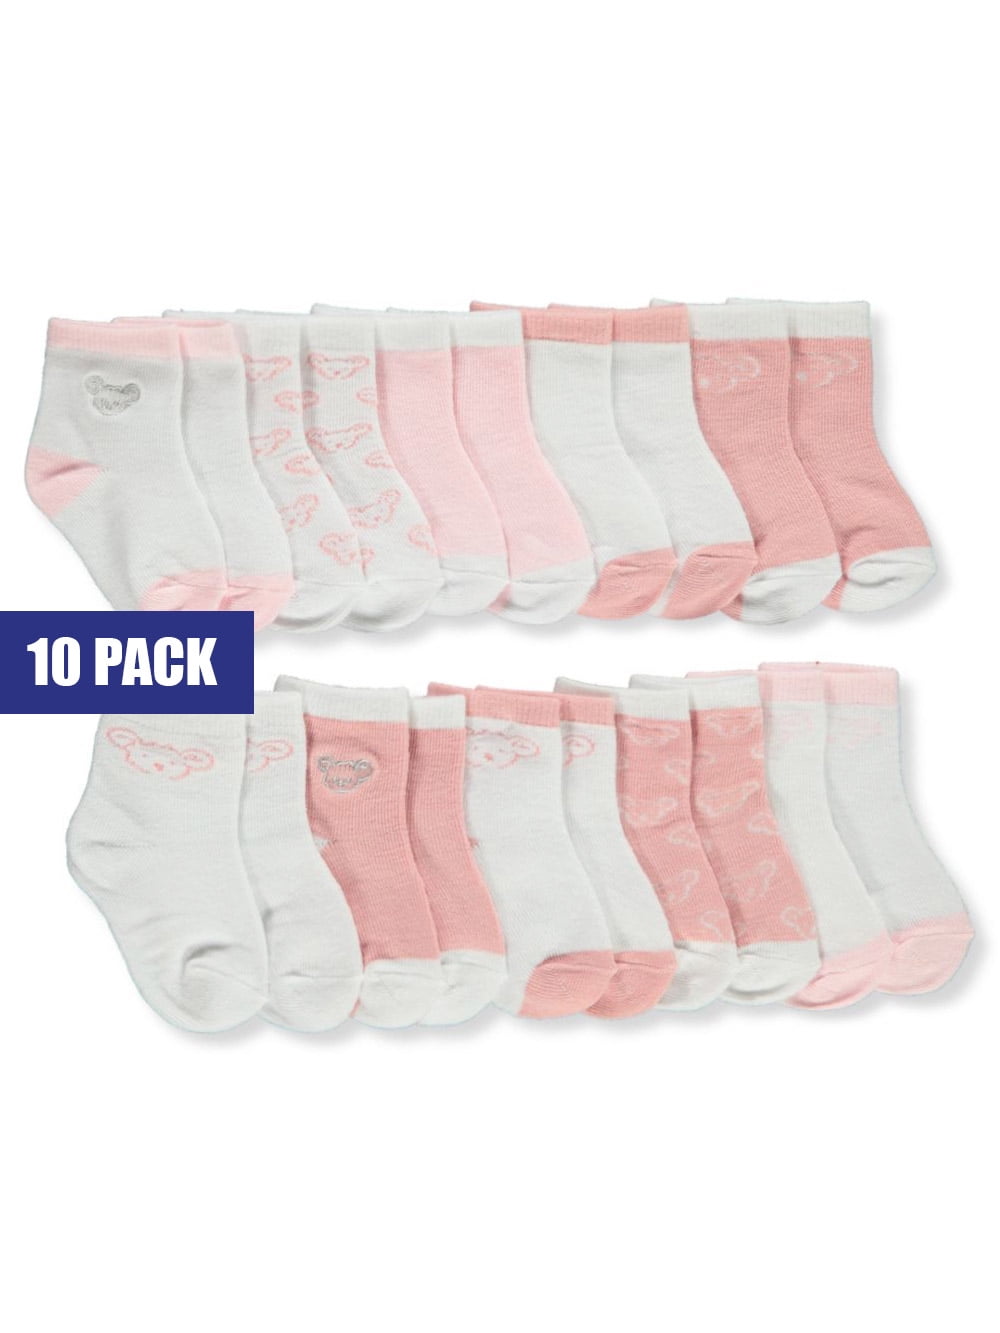 Koala Baby Baby Girls' 10-Pack Crew Socks - white/multi, 6 - 12 months ...